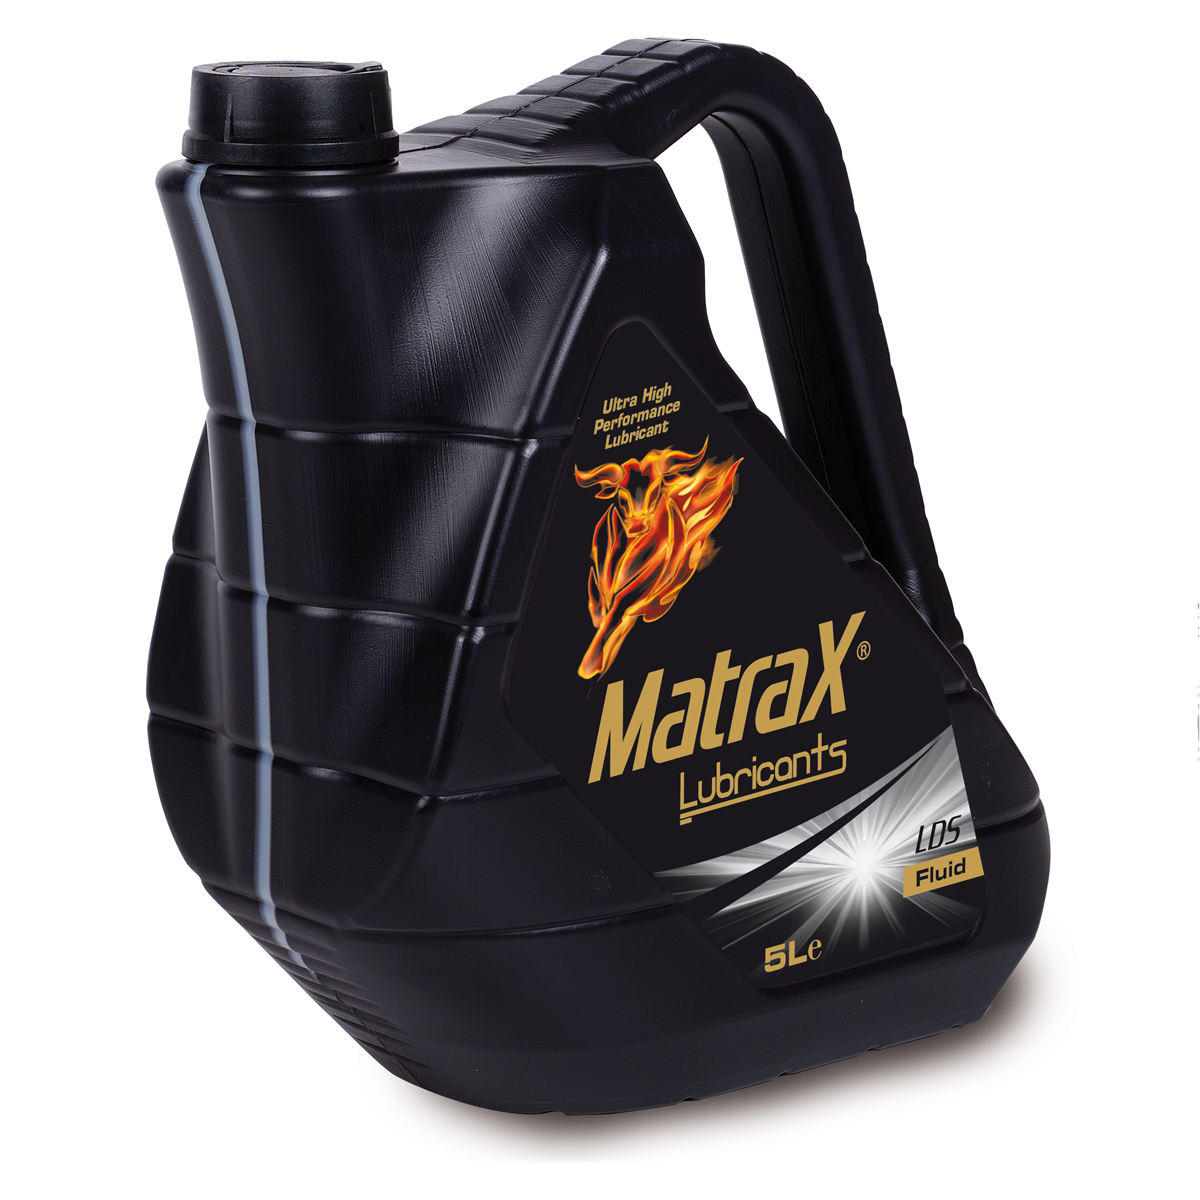 matrax-lubricants-LDS-Fluid-5l